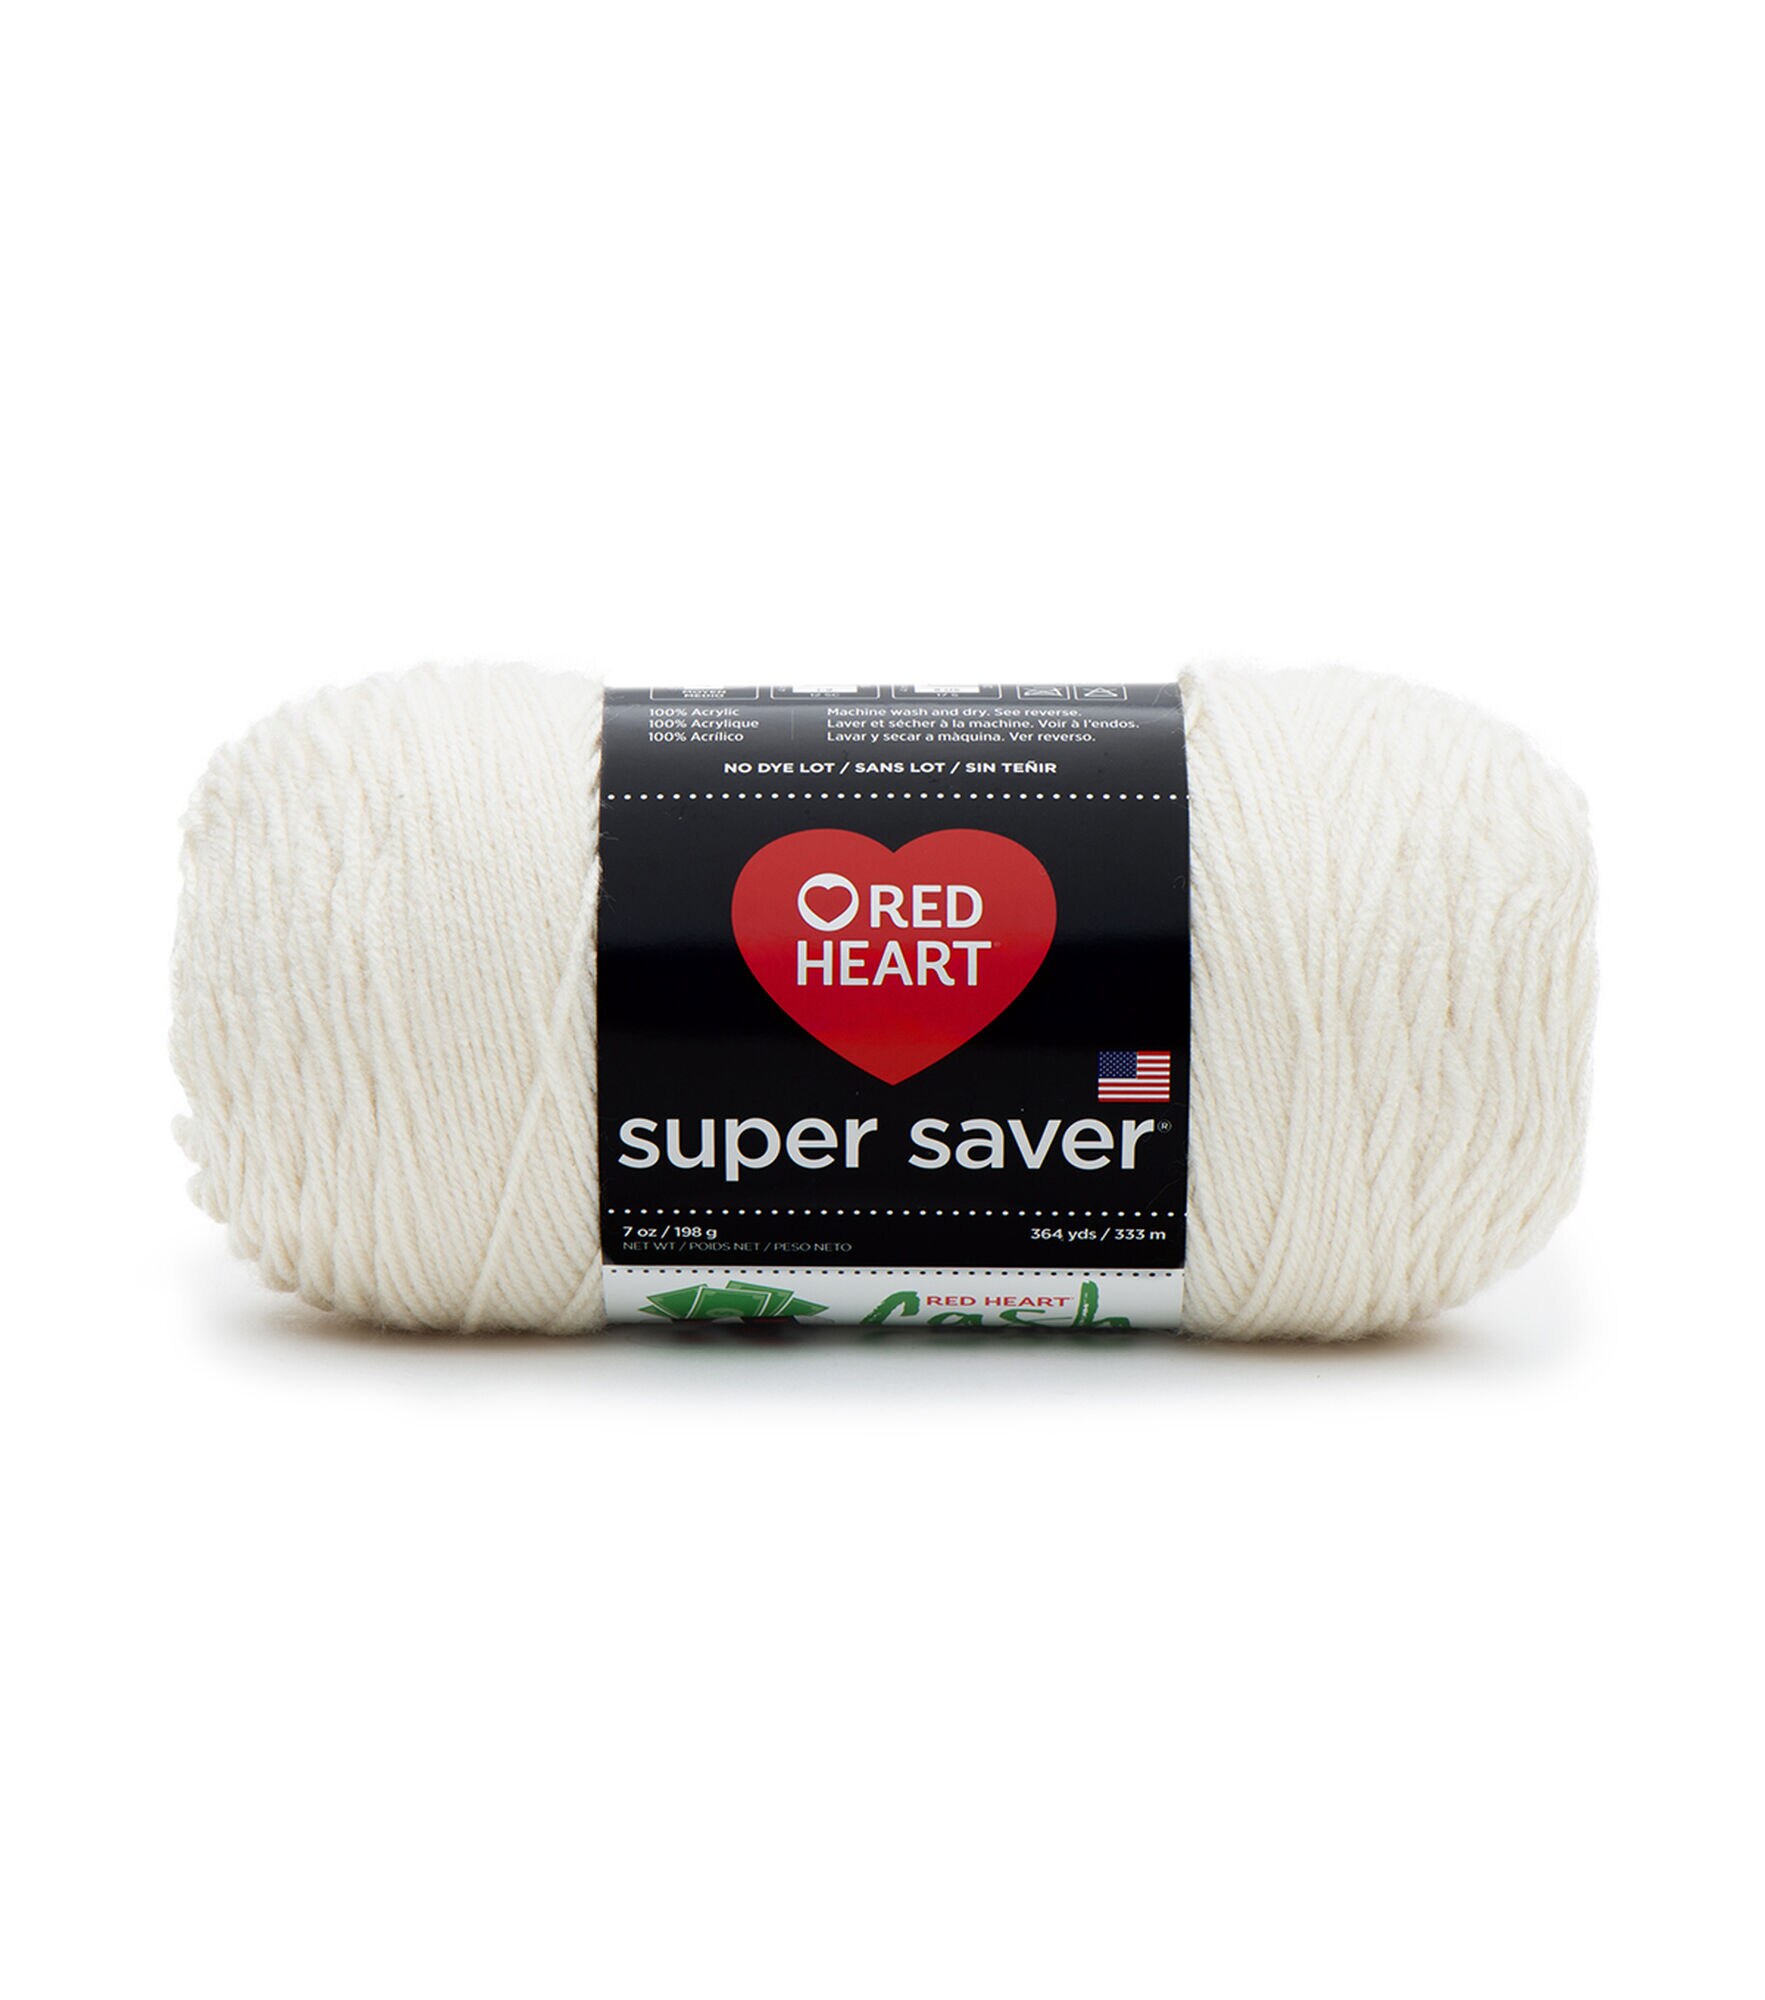 RED HEART Super Saver Yarn, Buff